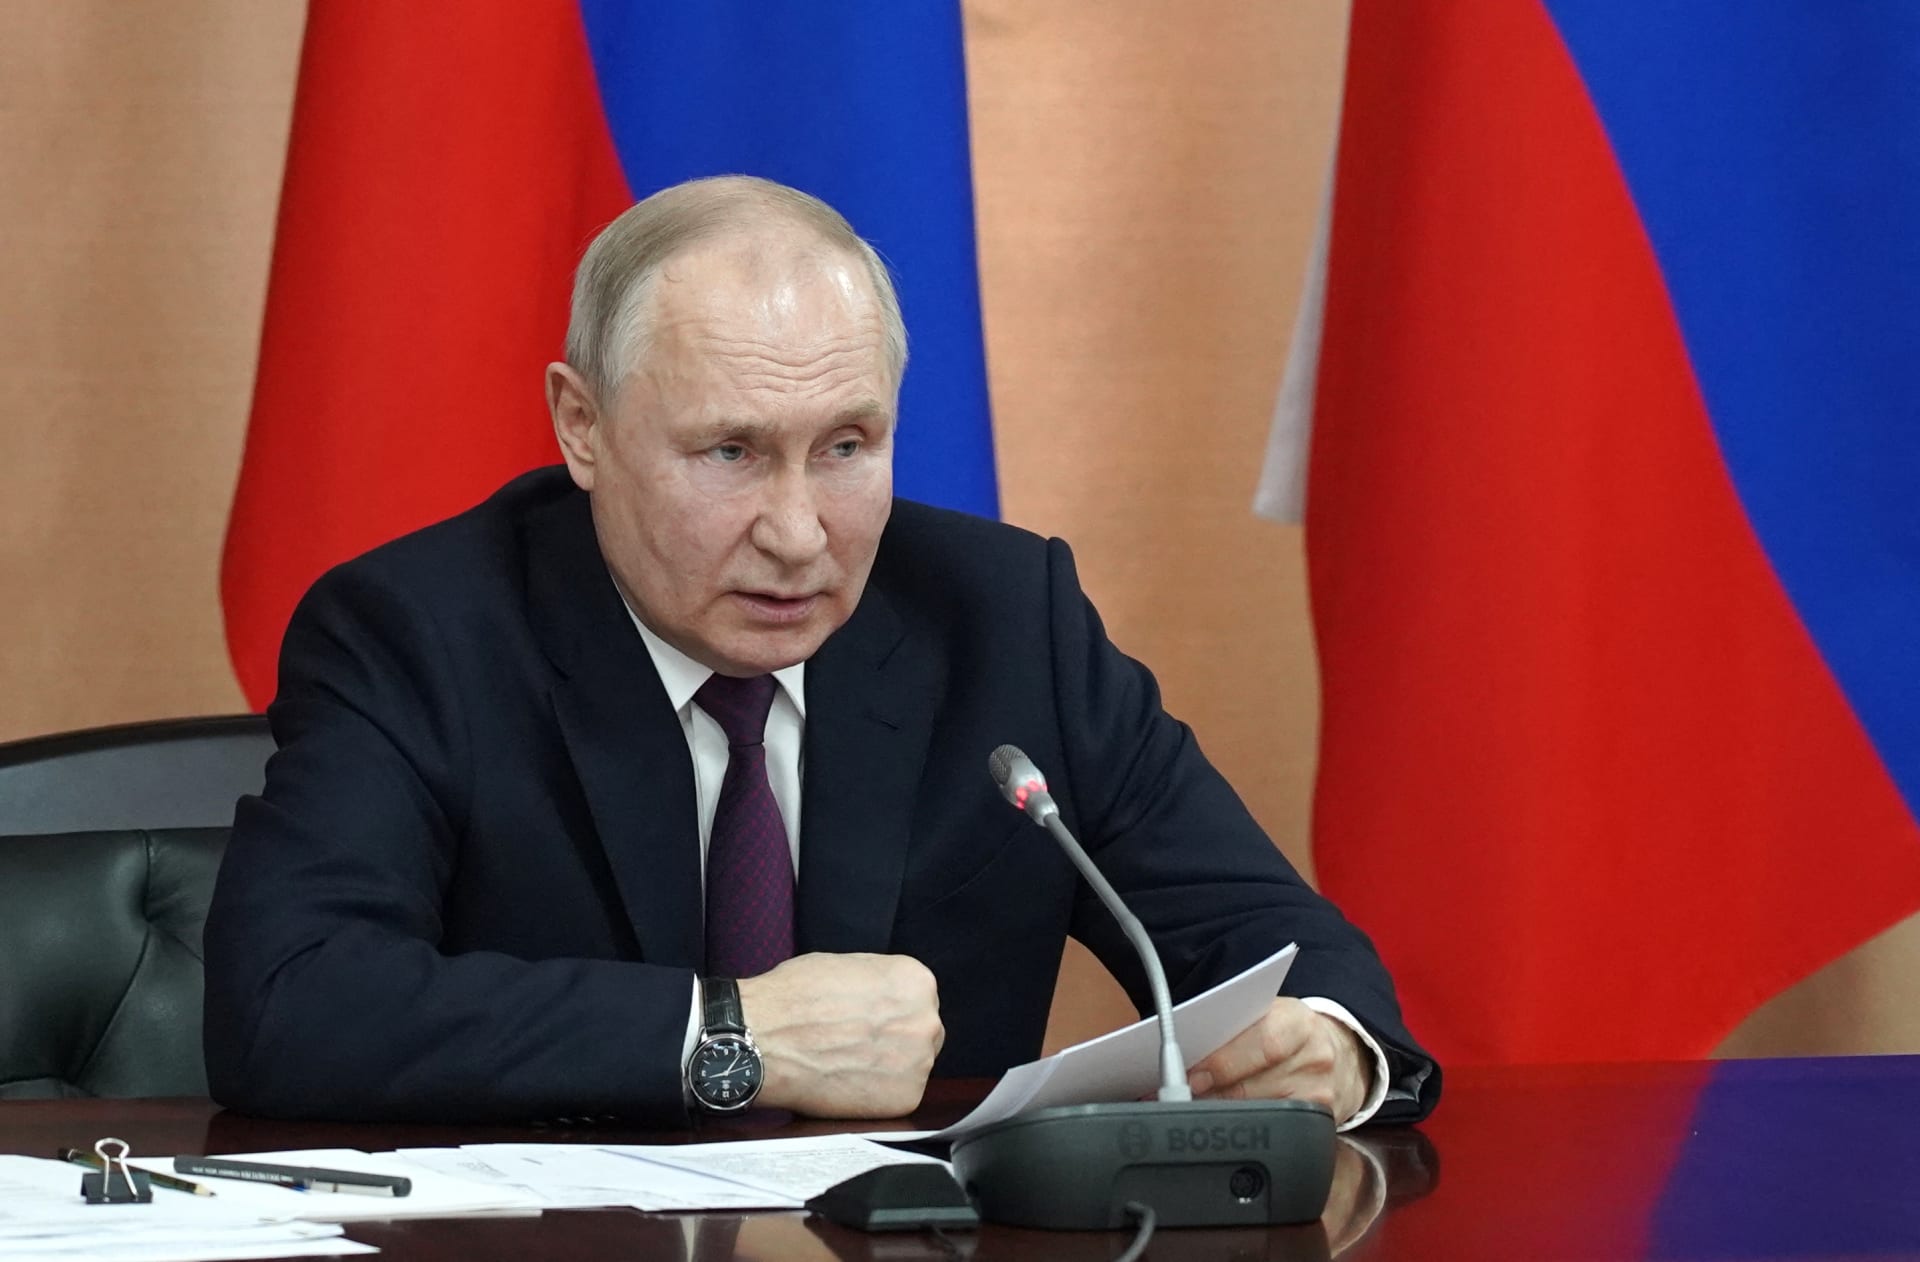 بوتين يوقع وثيقة انسحاب روسيا من معاهدة القوات المسلحة التقليدية في أوروبا
